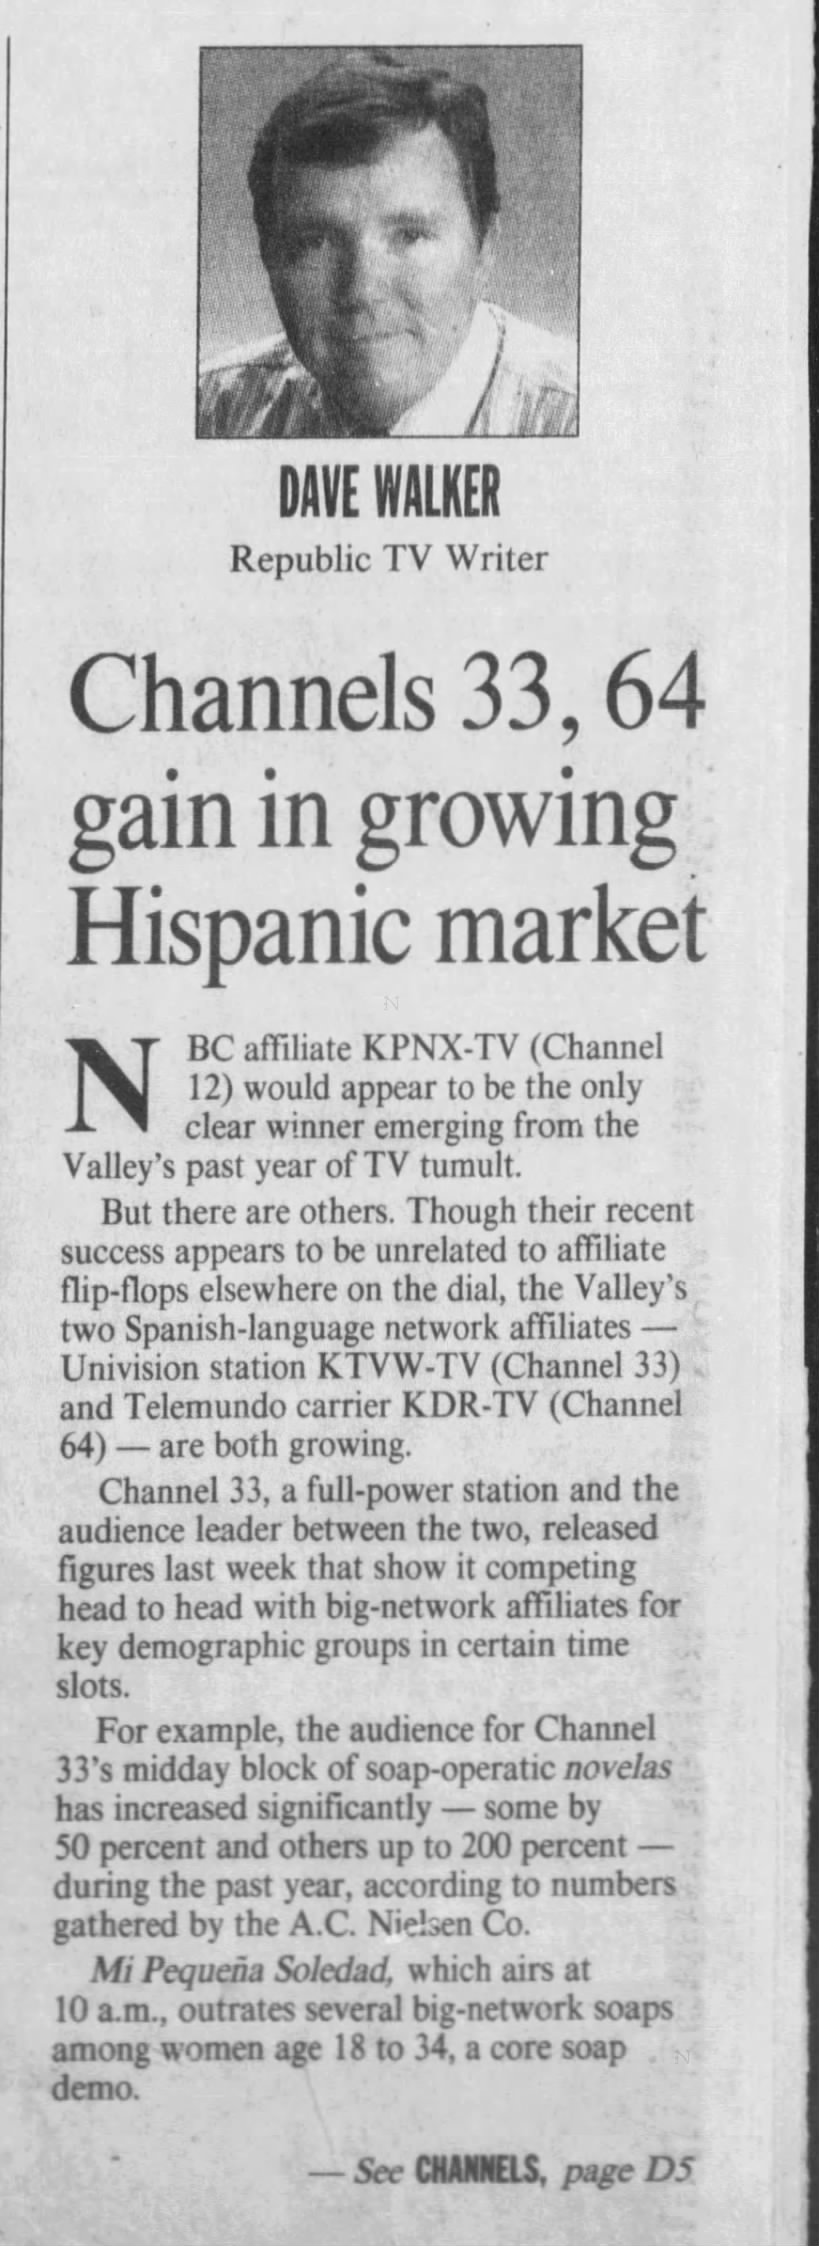 Channels 33, 64 gain in growing Hispanic market